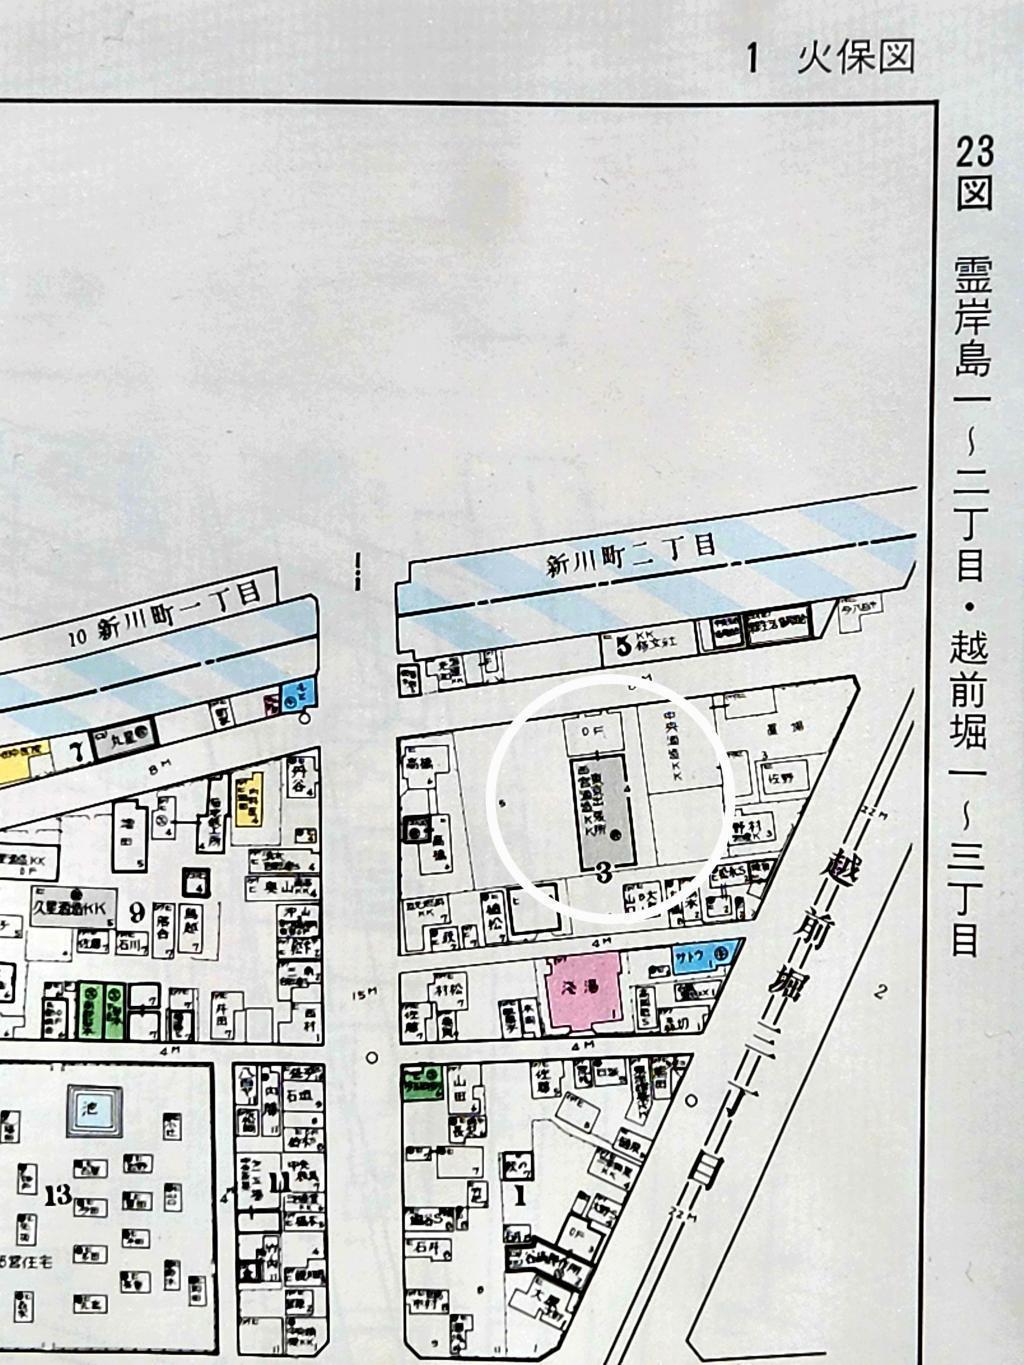 東京支店の歴史を教えてください。 江戸下り酒文化伝承の地「新川」で店を構える「日本盛」さん、東京支店長にインタビューしました！